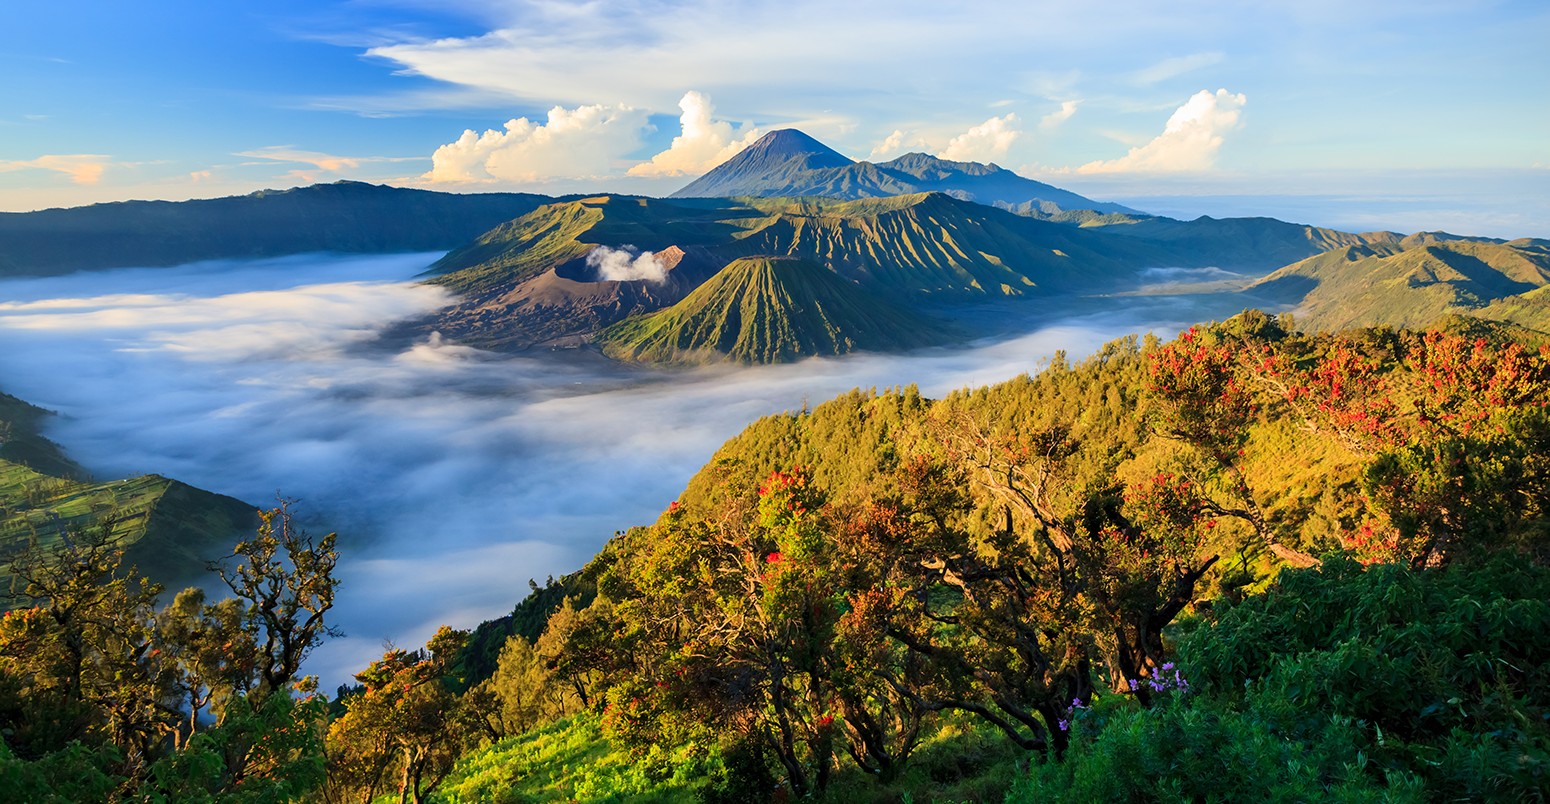 Java, hòn dảo tạo từ núi lửa đẹp nhất châu Á